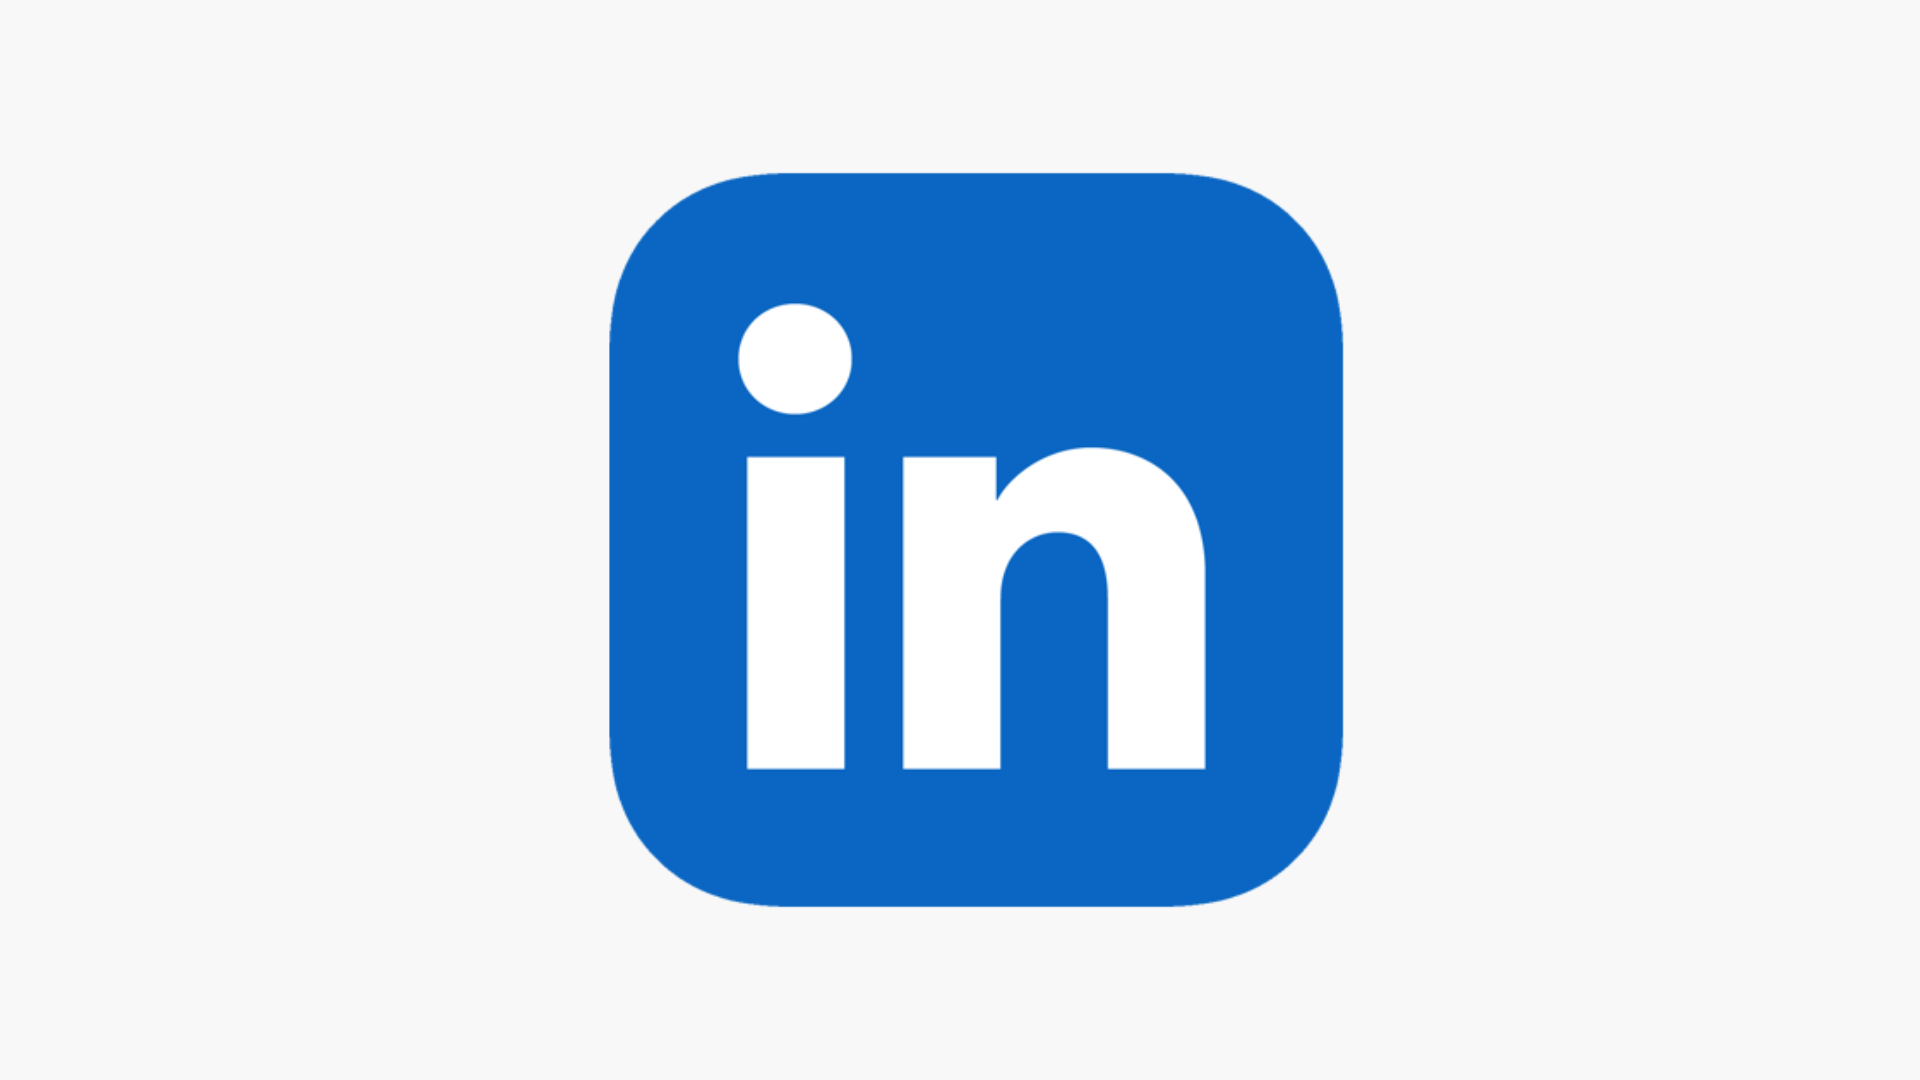 Geração Z impulsiona crescimento do LinkedIn no Brasil alcançando 75 milhões de usuários